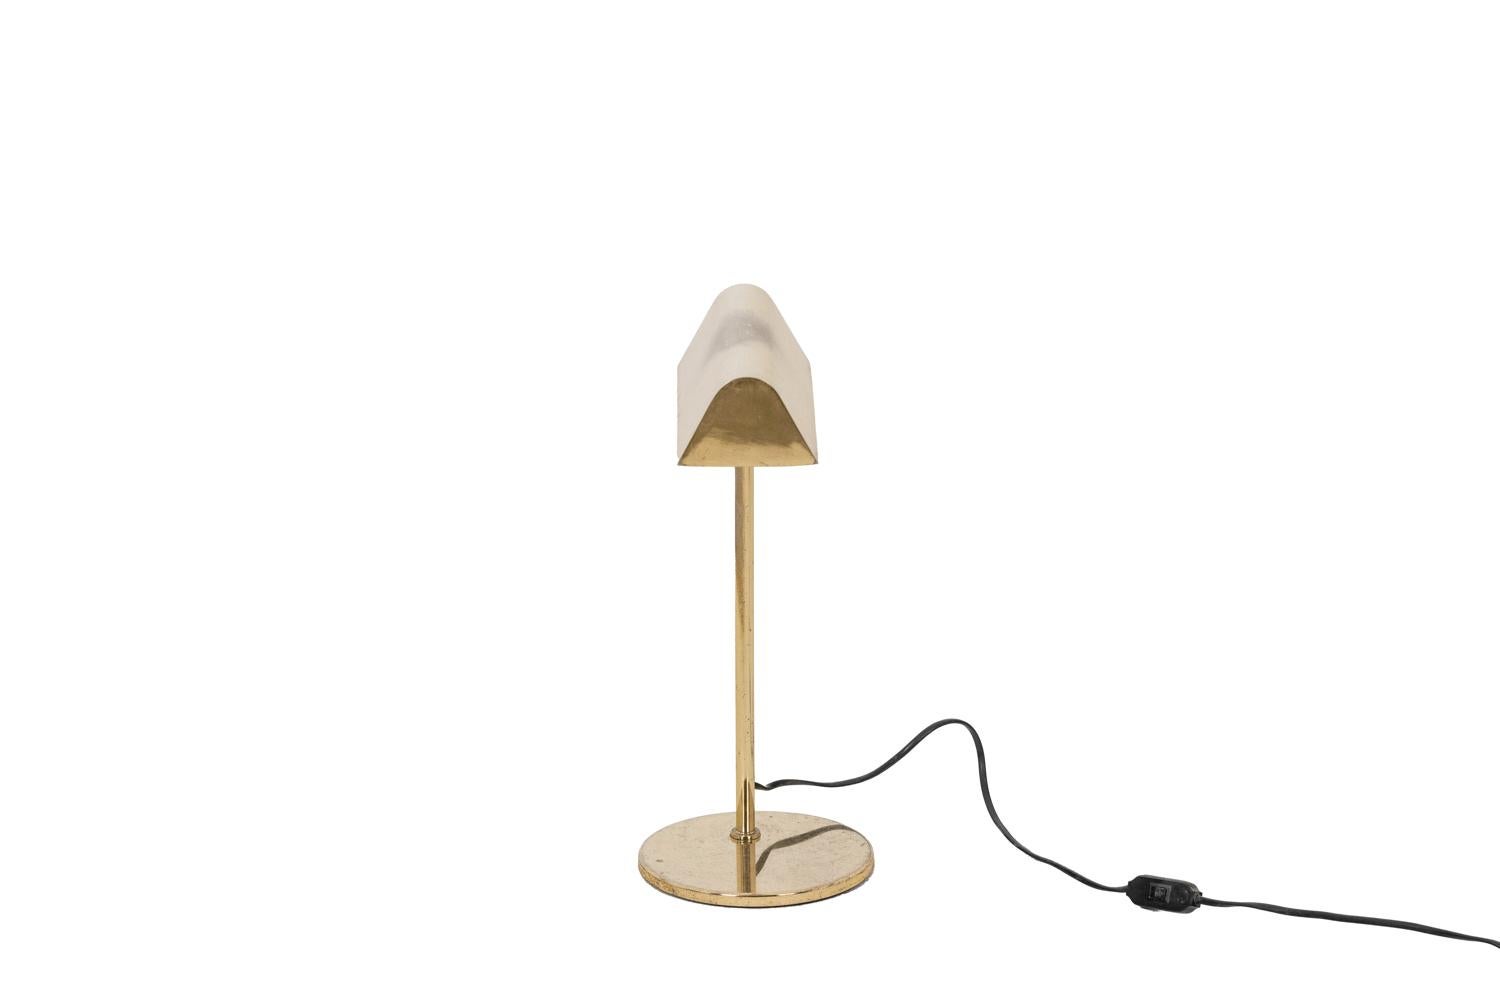 Lampe de bibliothèque en laiton doré, articulée et de forme rectangulaire.

Travail français réalisé dans les années 1970.

Electricité neuve et fonctionnelle, fonctionne avec une petite prise E-14.